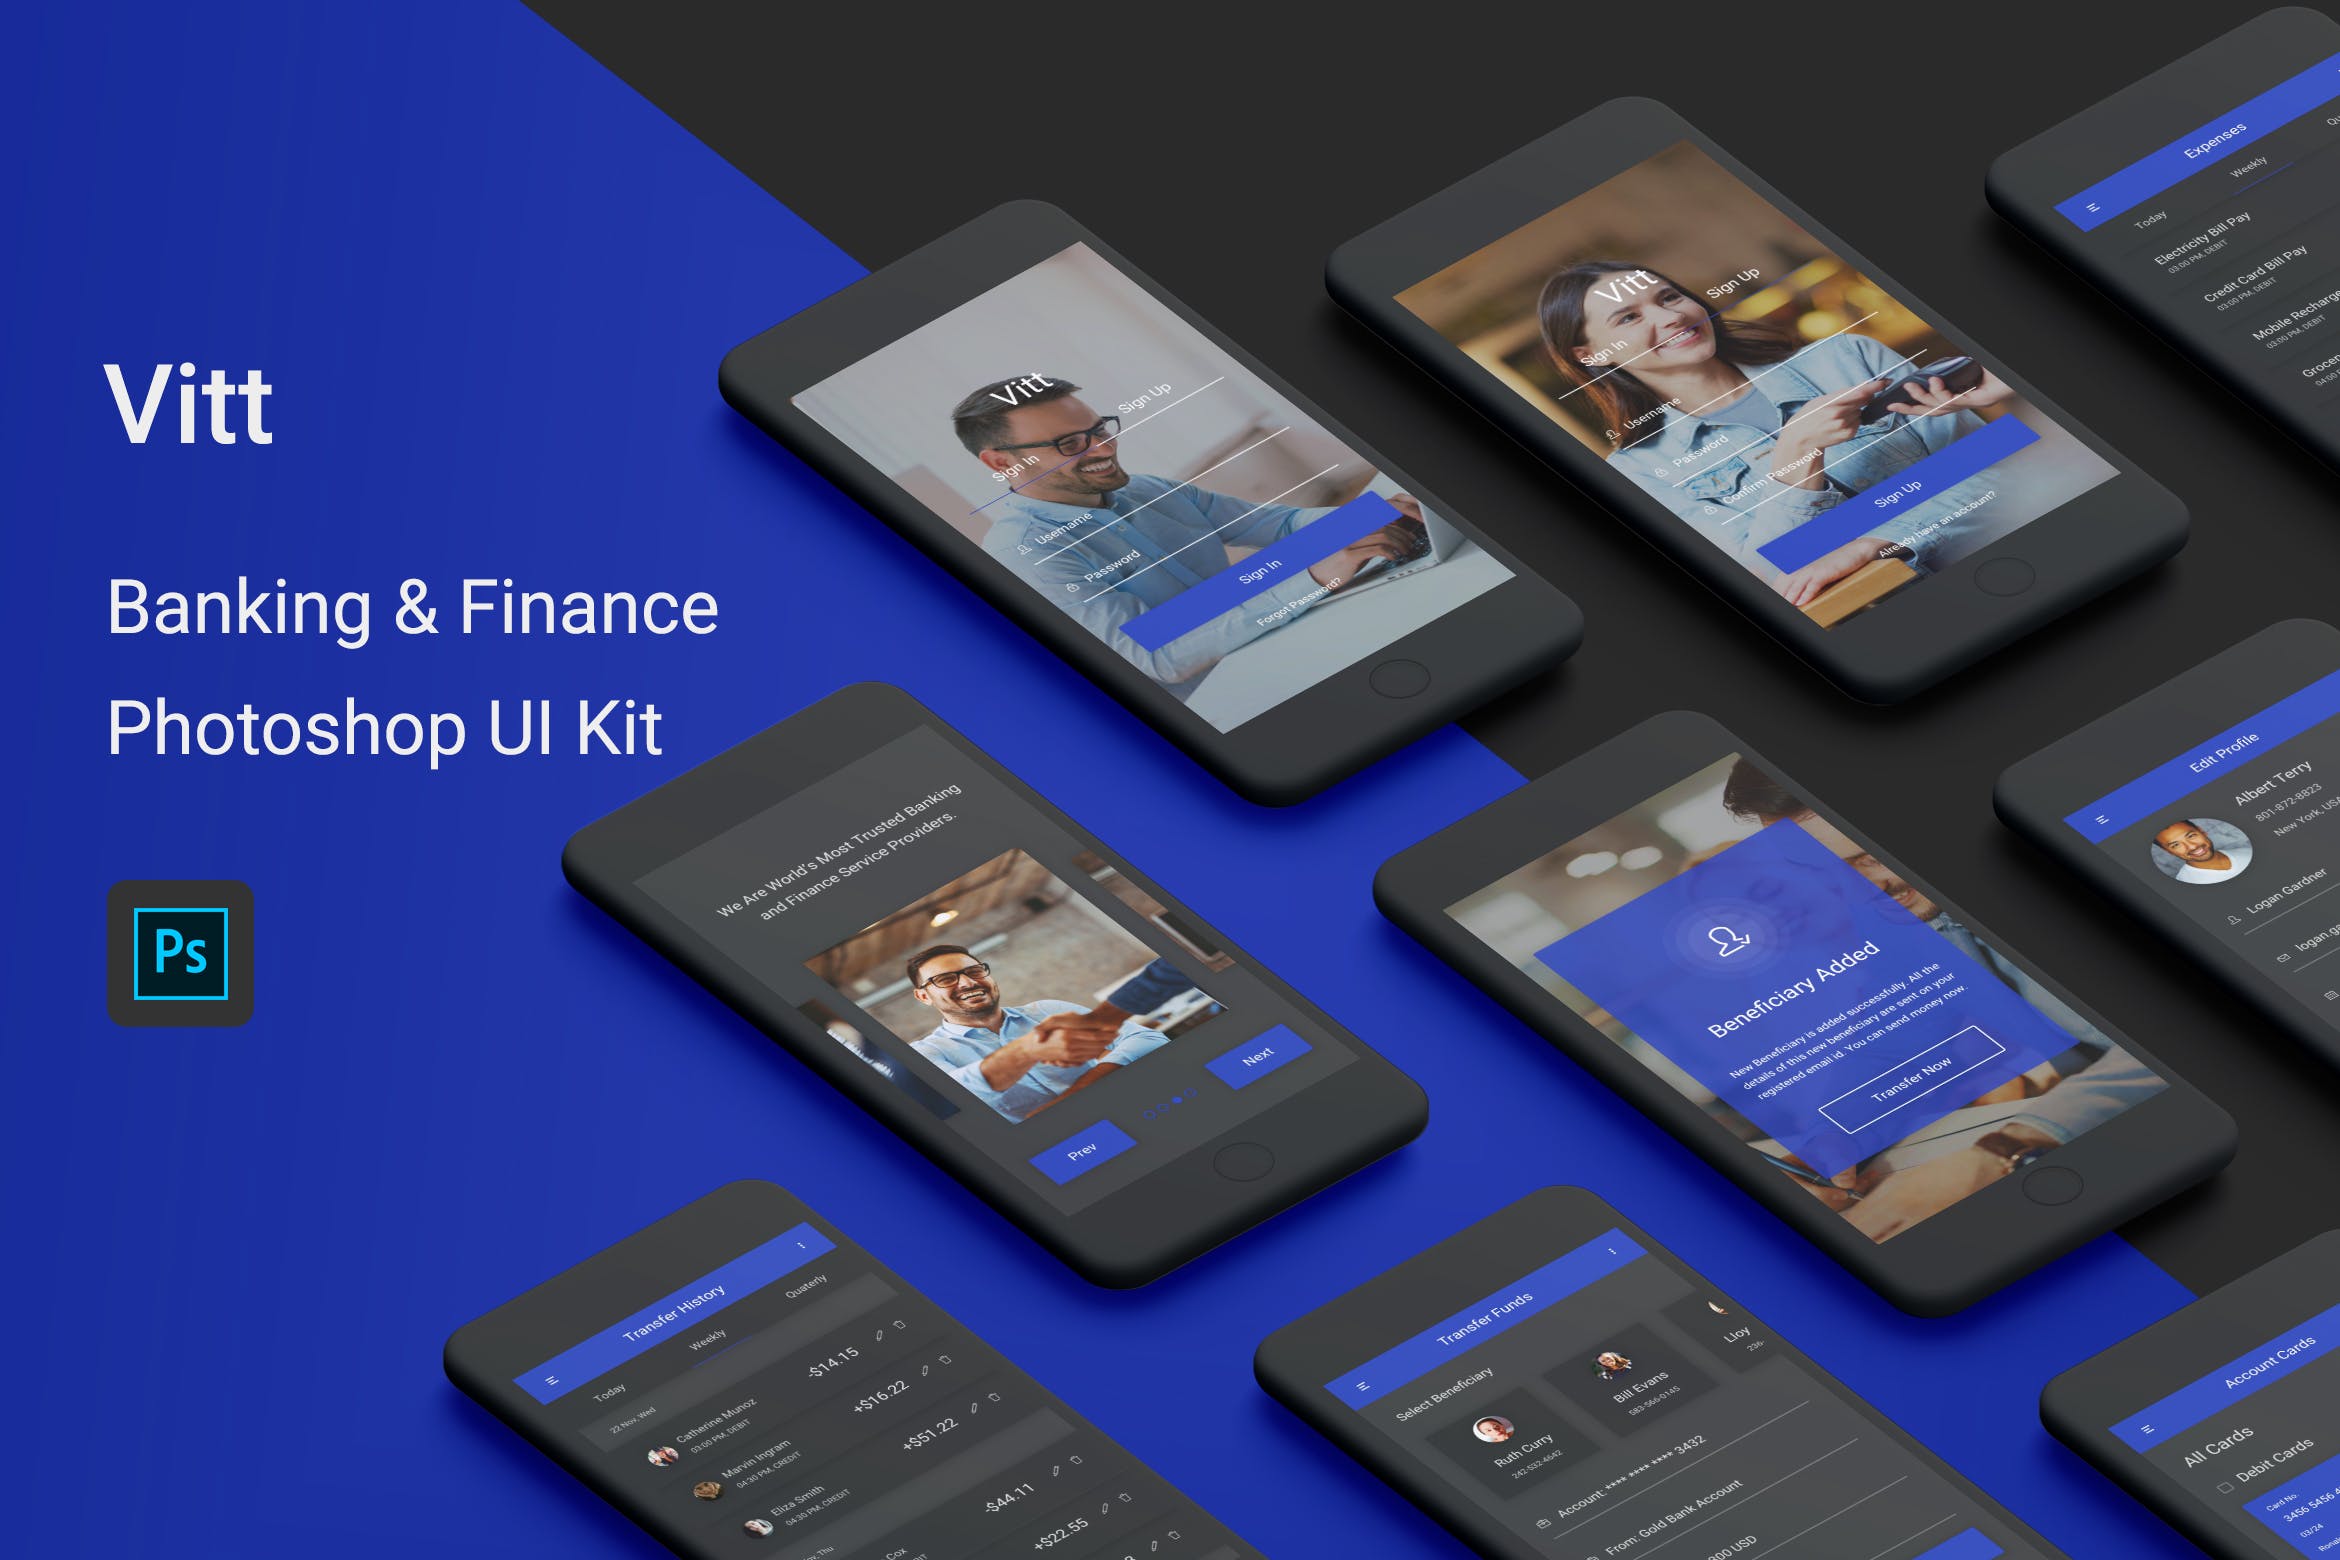 网上银行金融APP应用UI用户交互界面设计PSD模板 Vitt – Banking & Finance Photoshop UI Kit插图